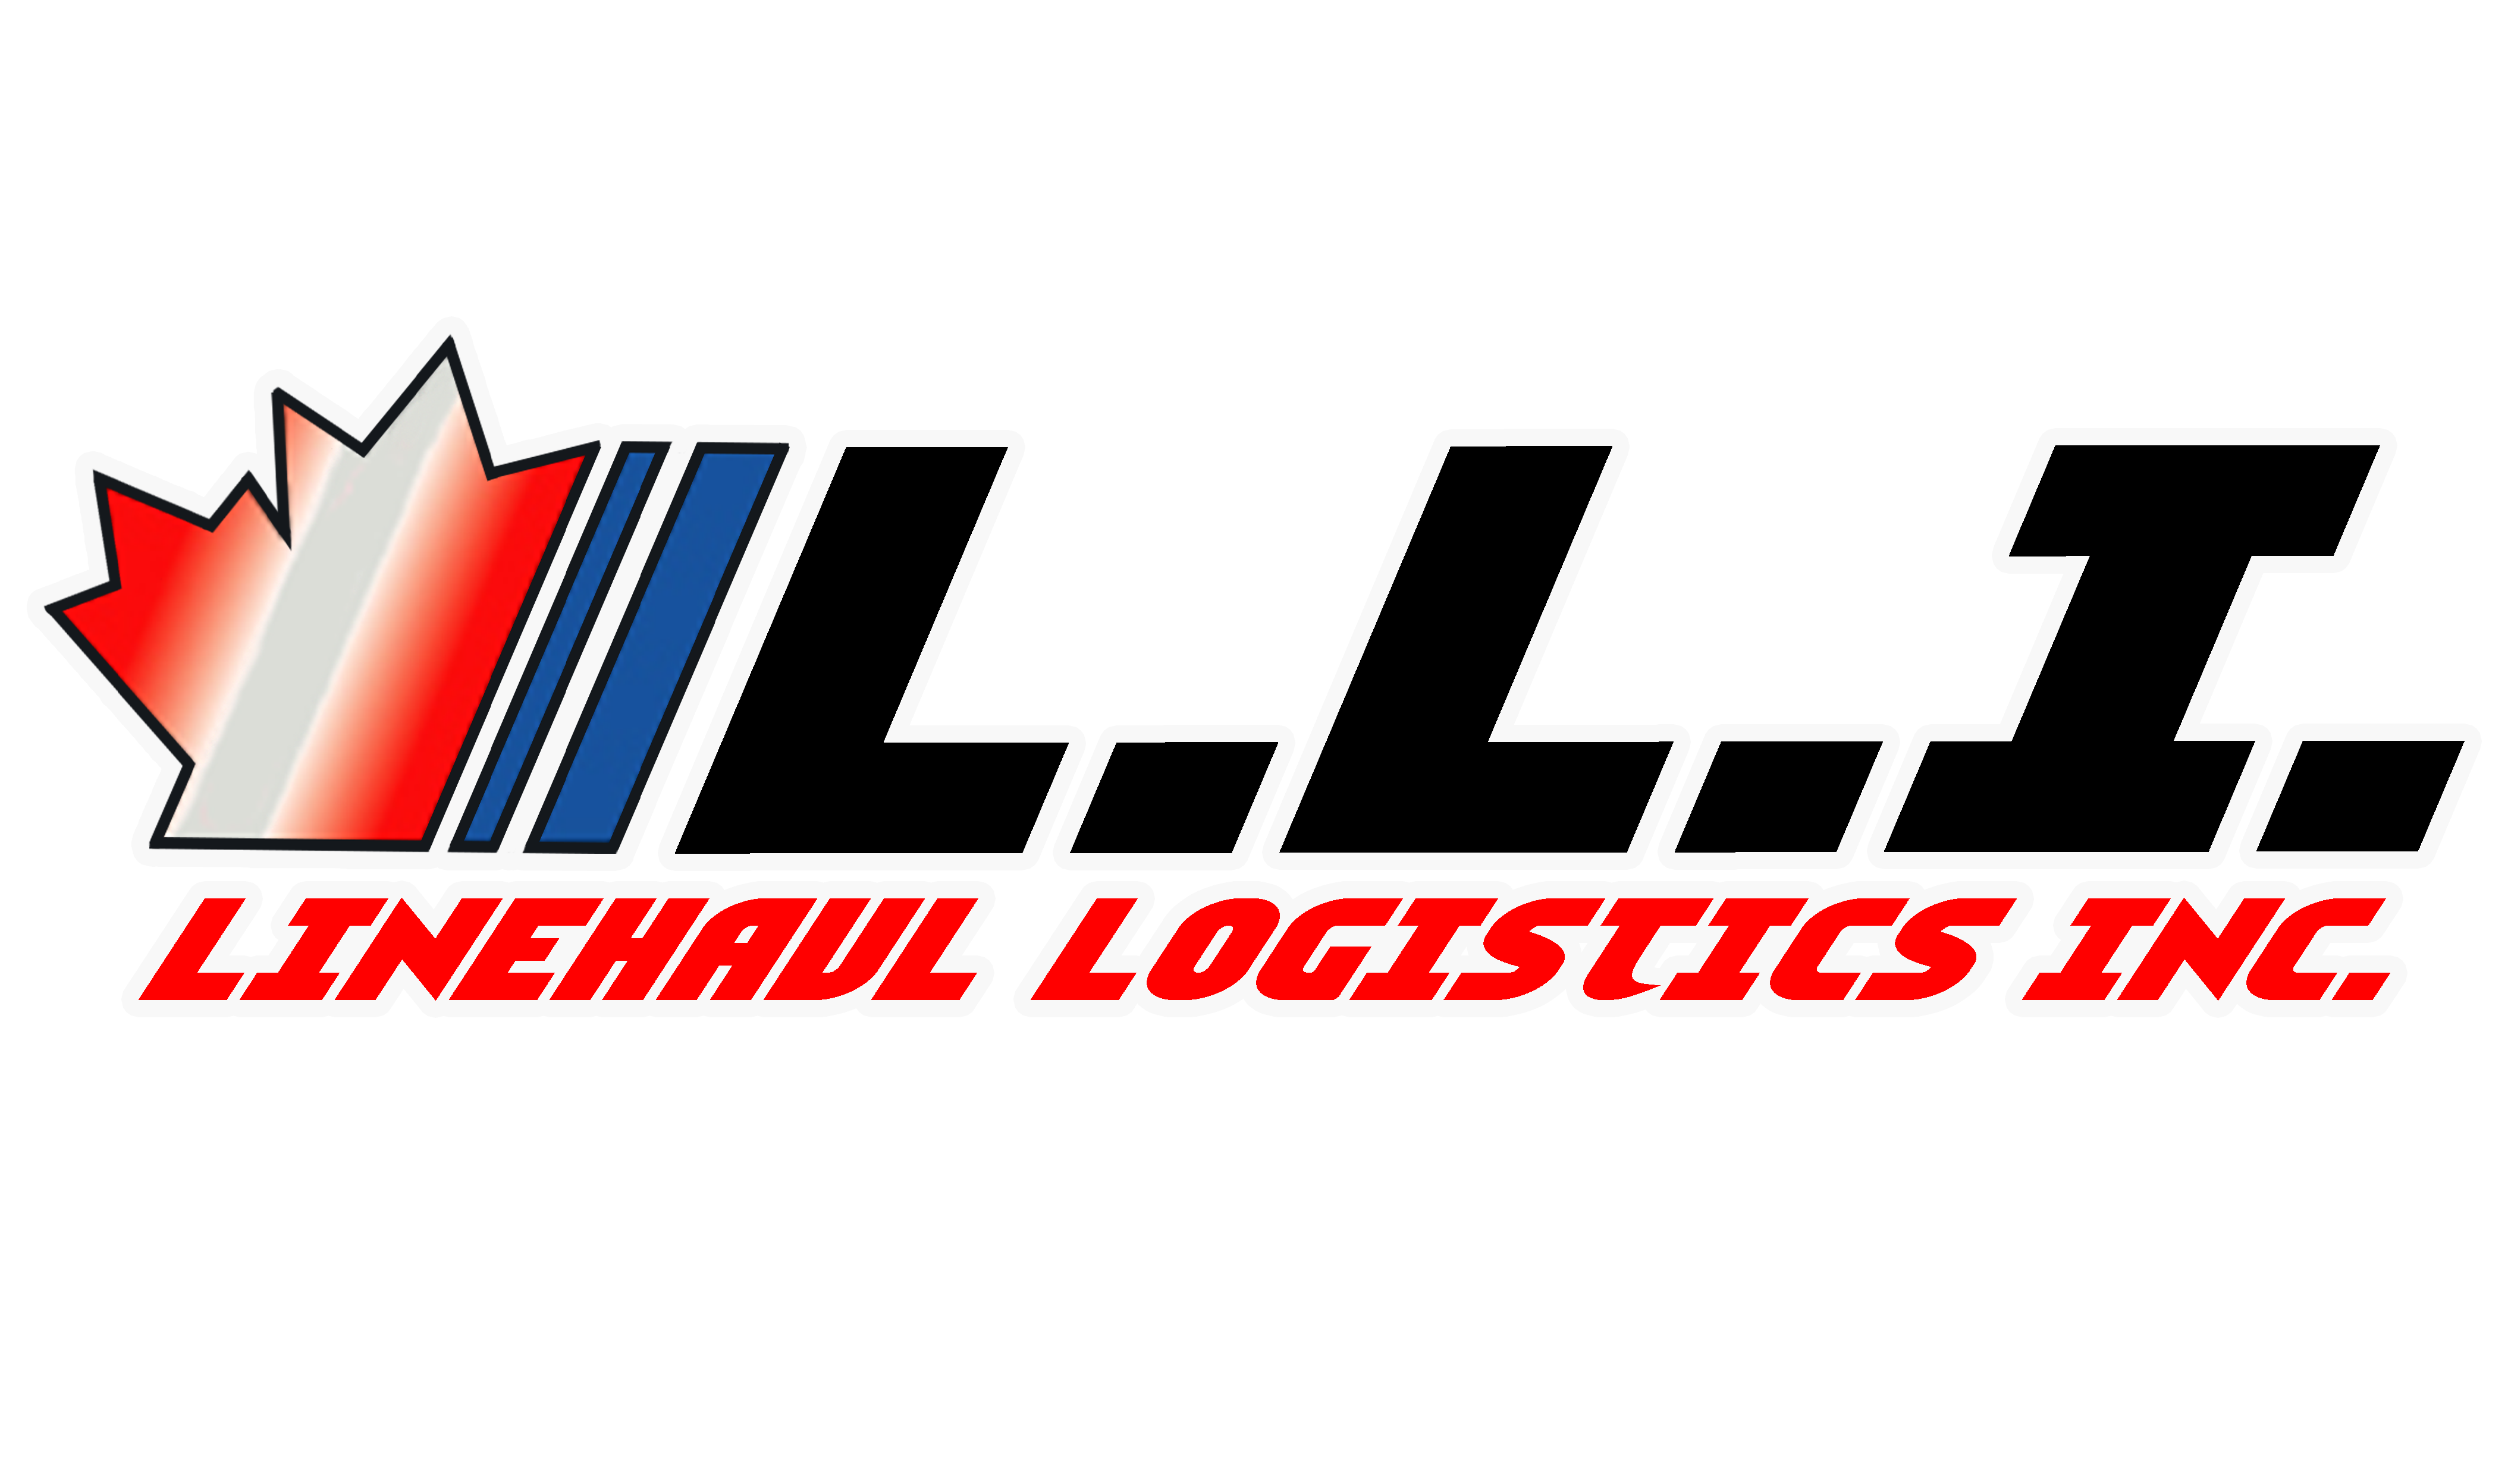 Linehaul Logistics inc